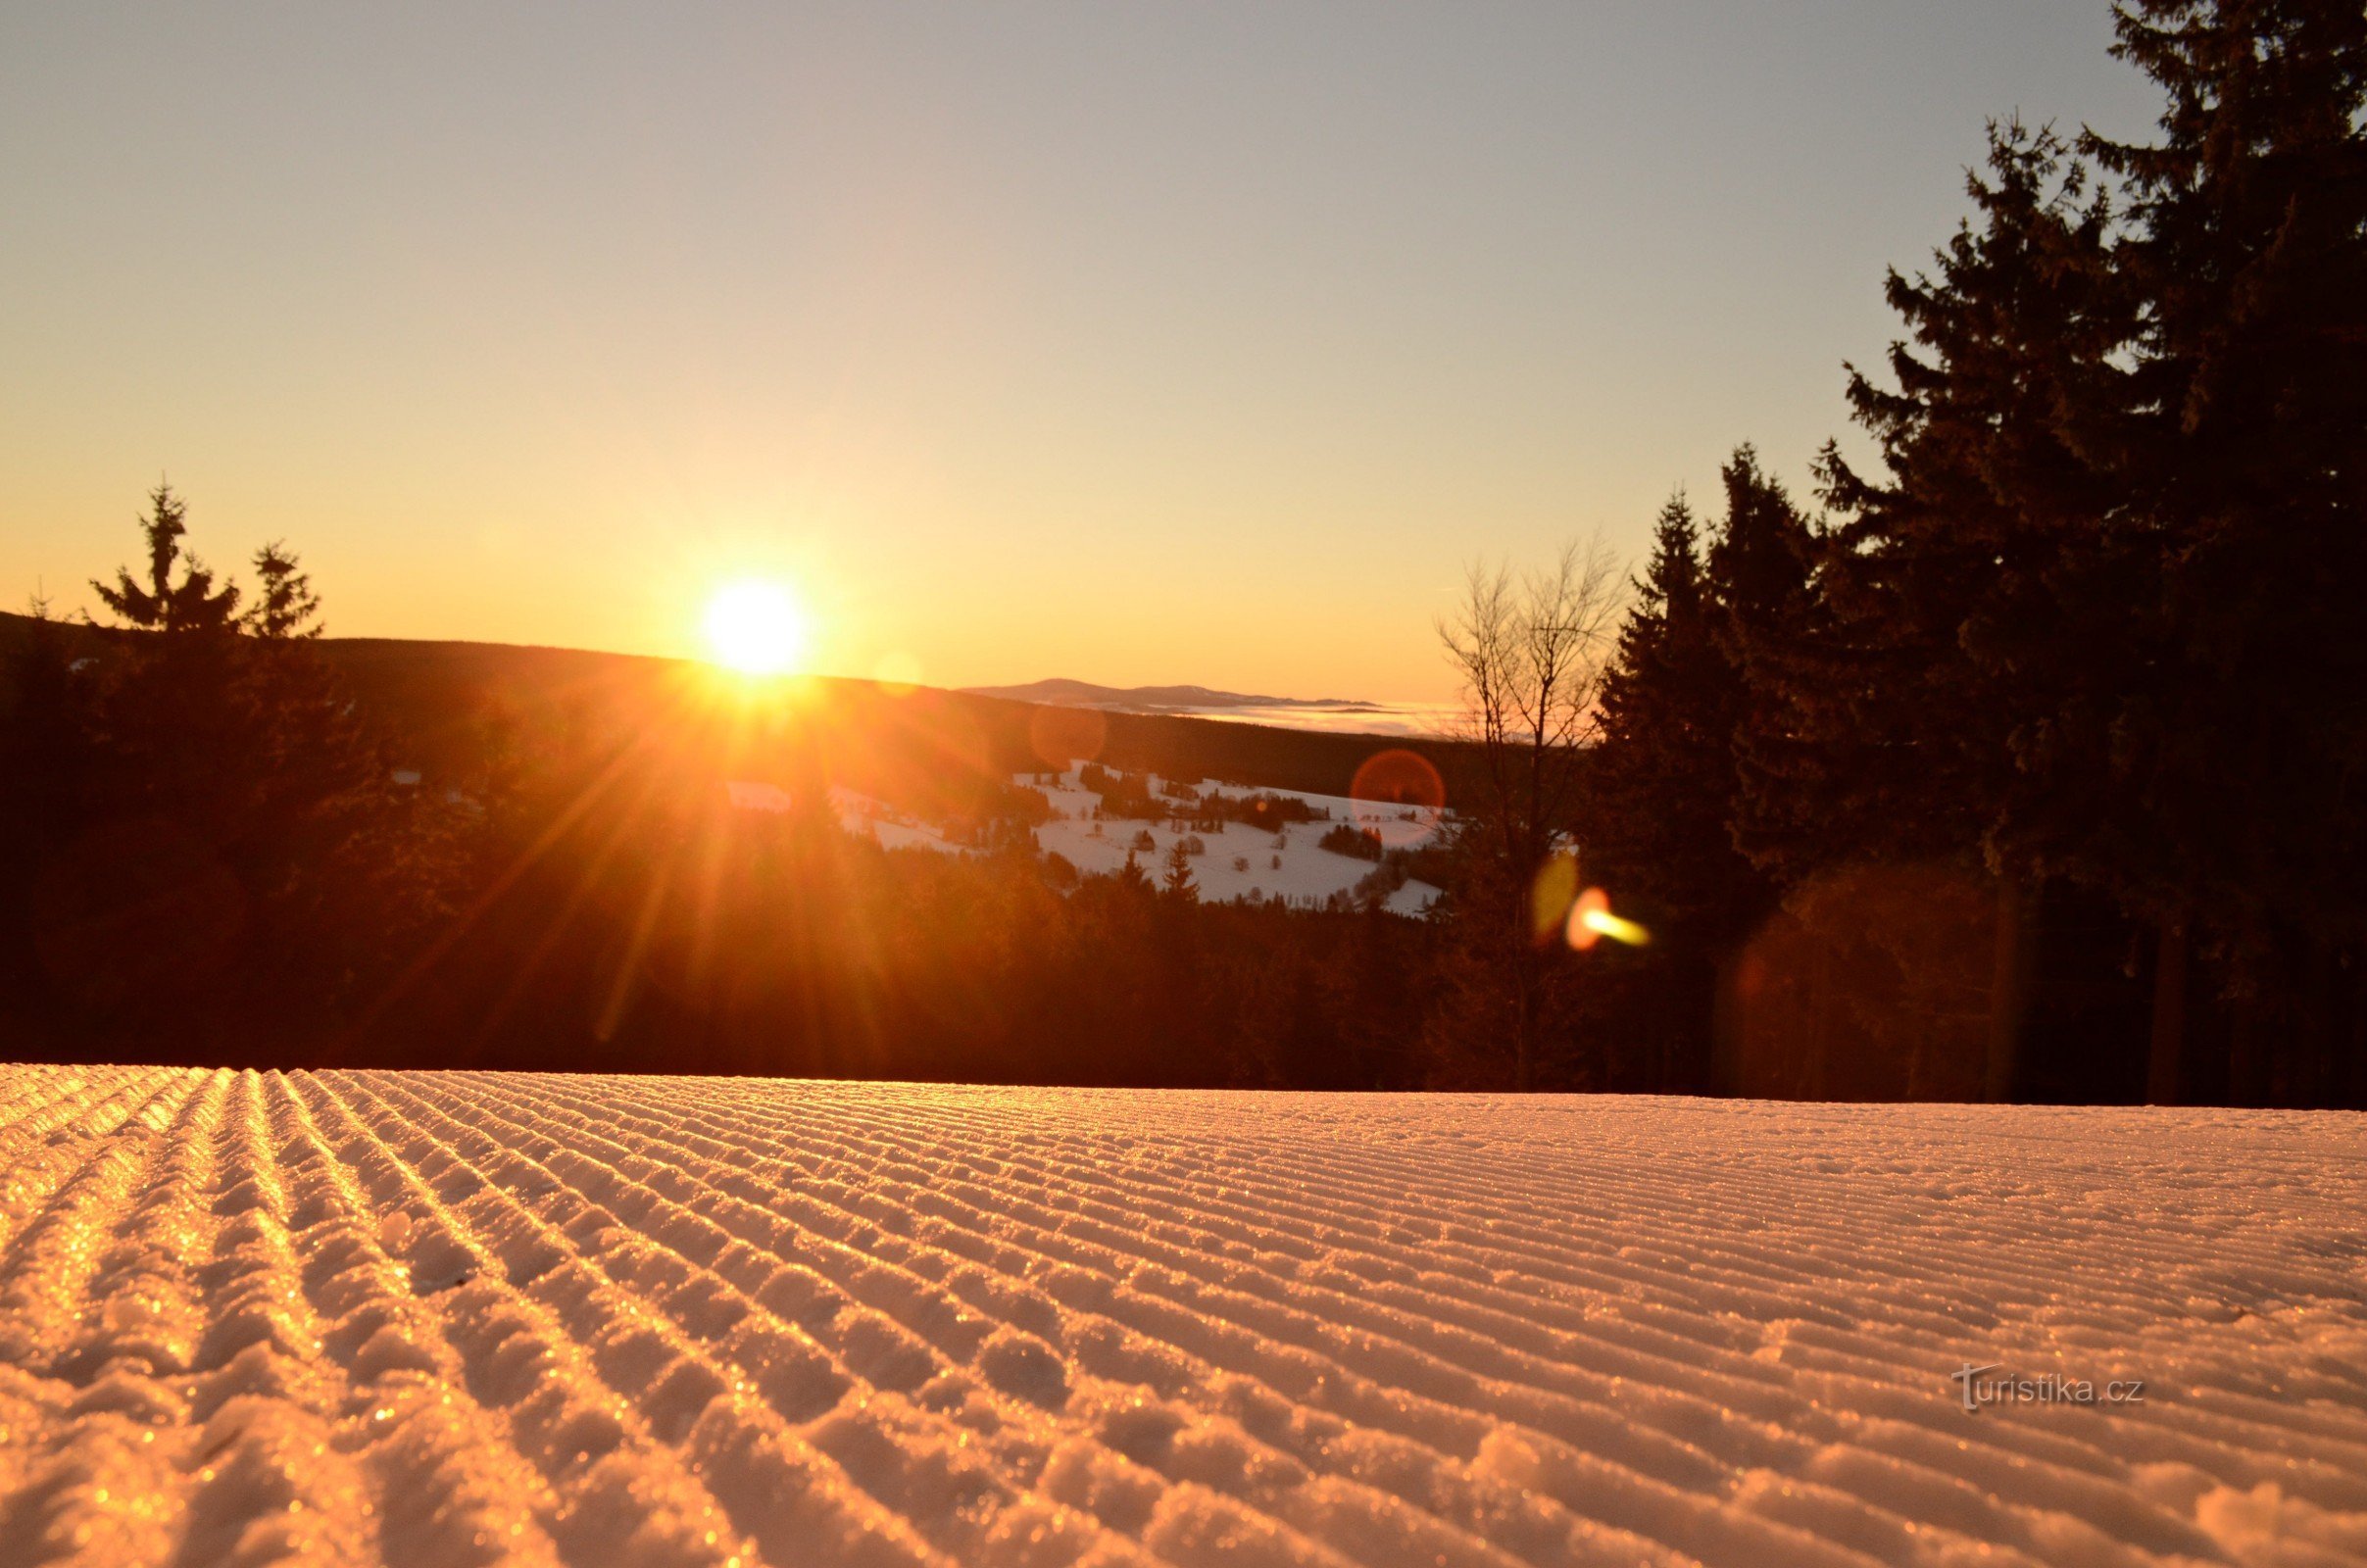 Skizentrum Říčky - ein modernes Skigebiet im Herzen des Adlergebirges